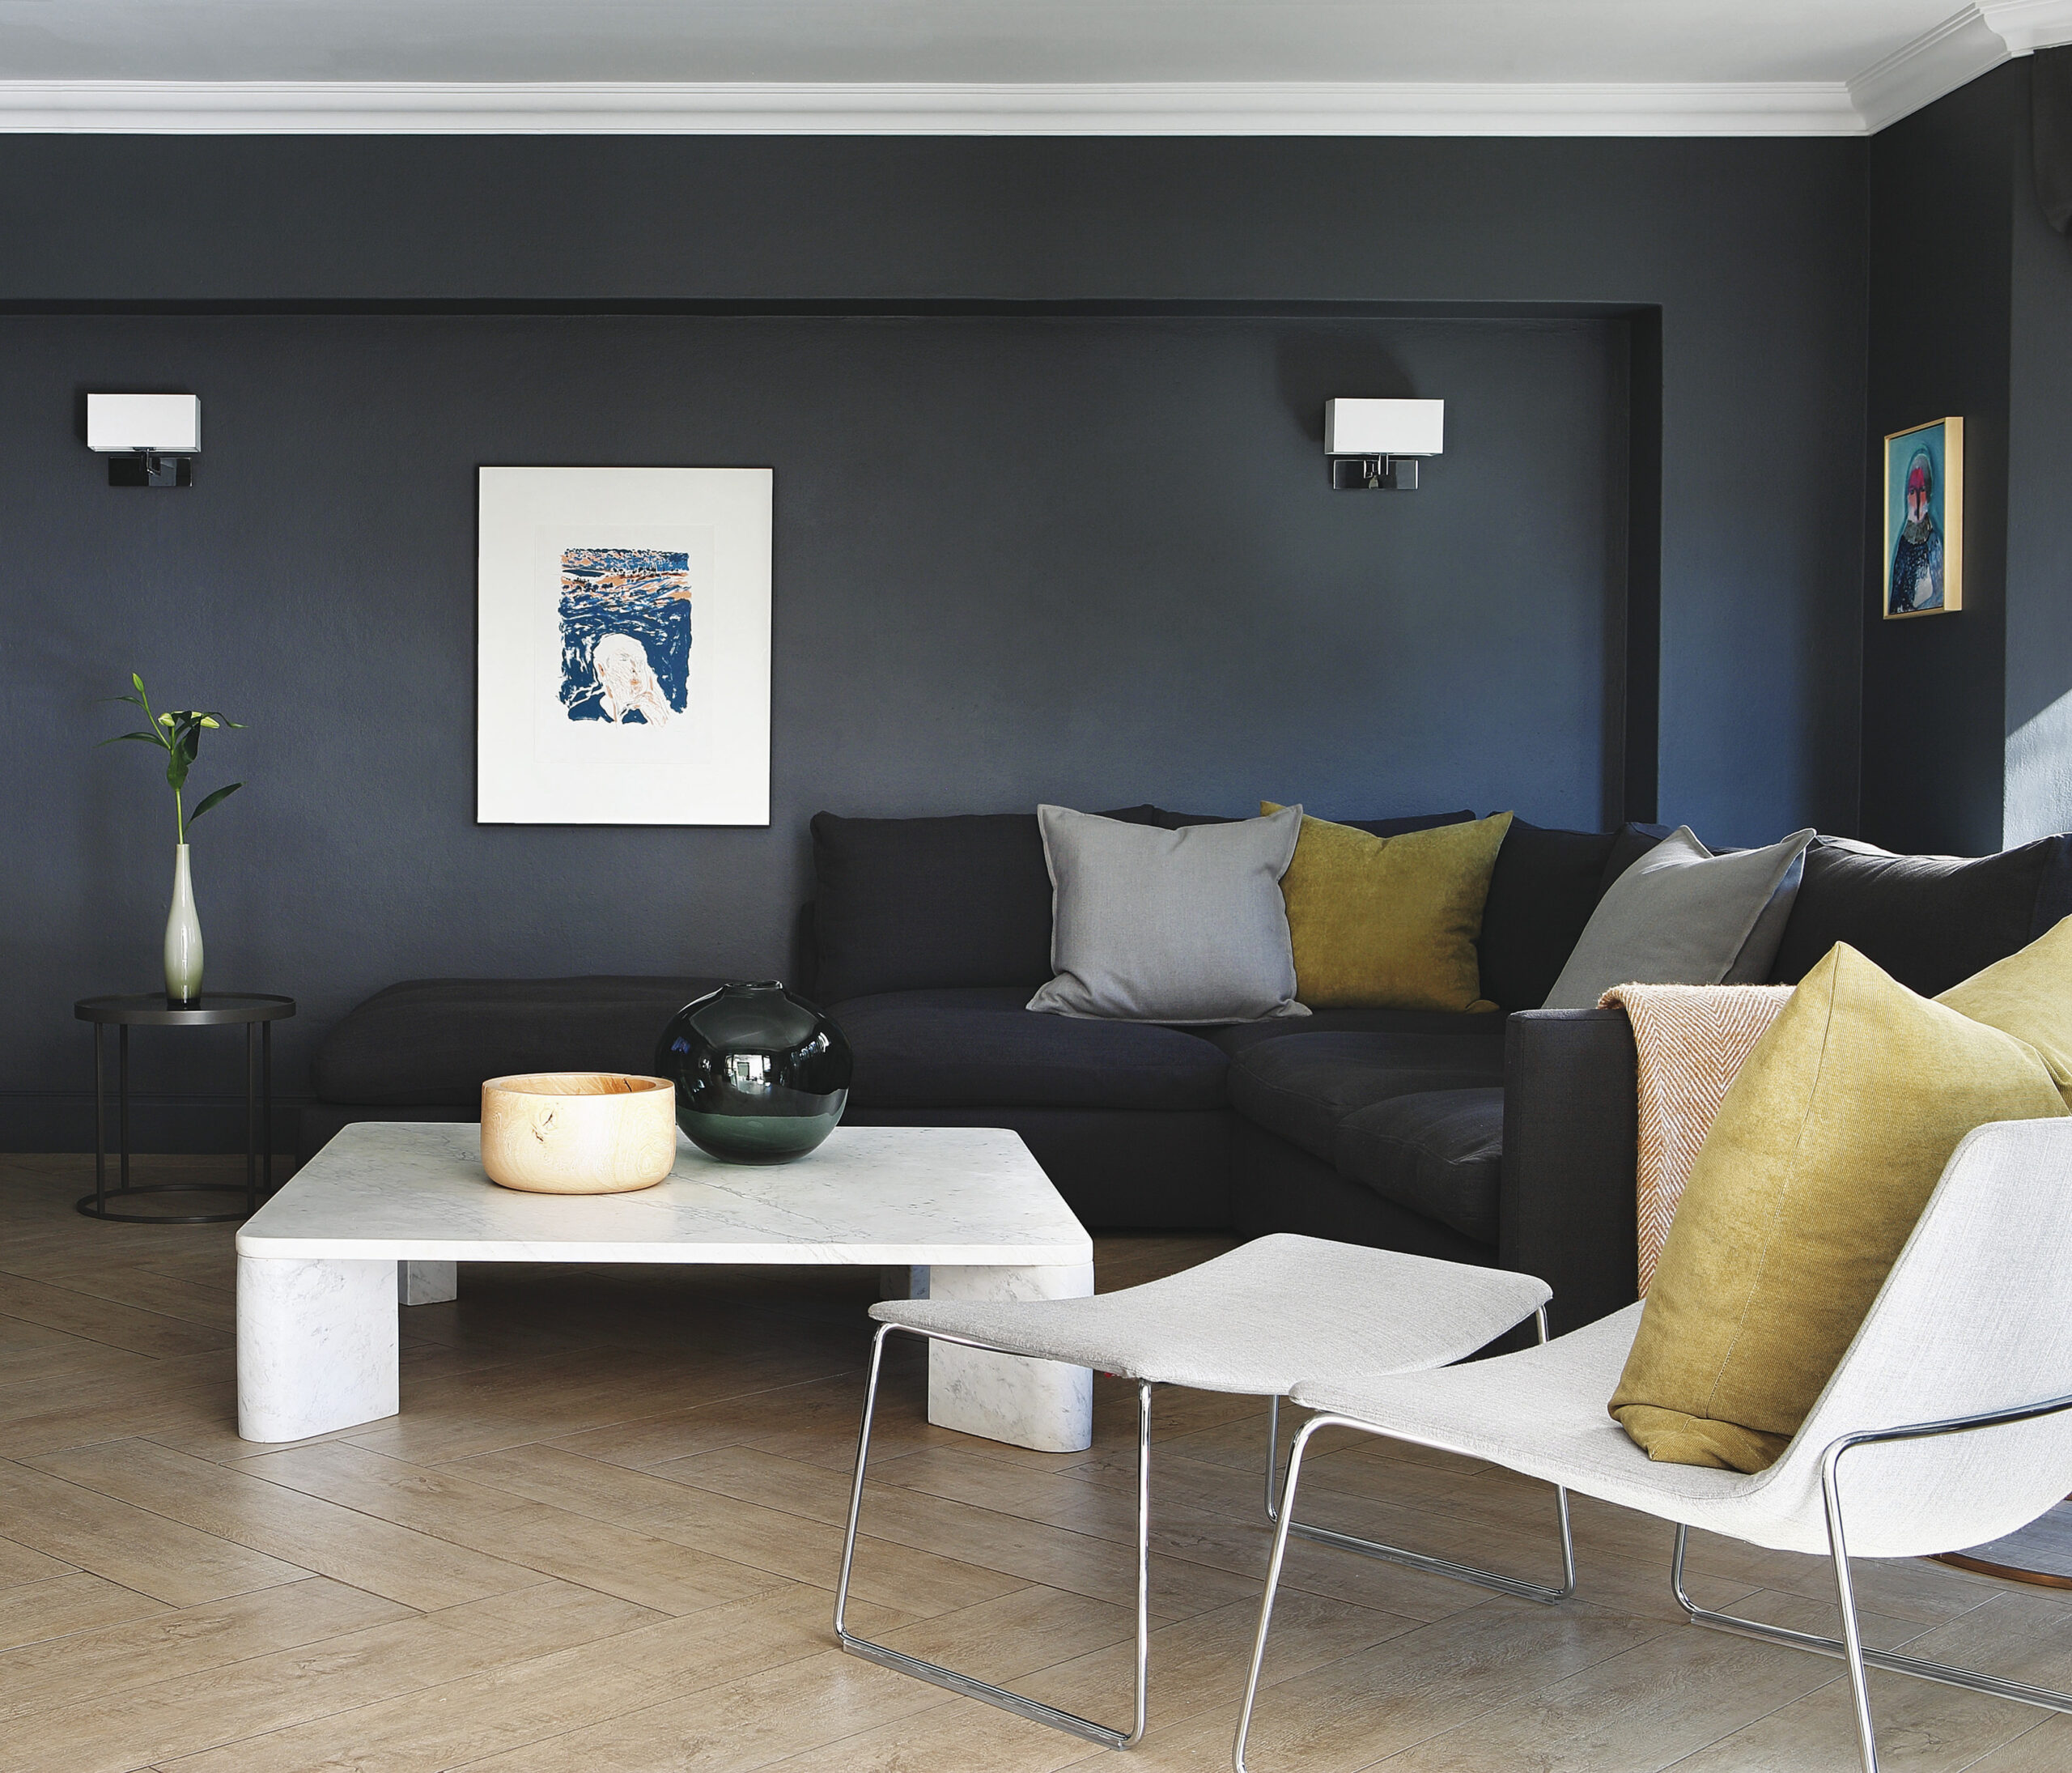 Trendfarben Fürs Wohnzimmer: So Wirken Die Farben | Obi within Wohnzimmer Farbgestaltung